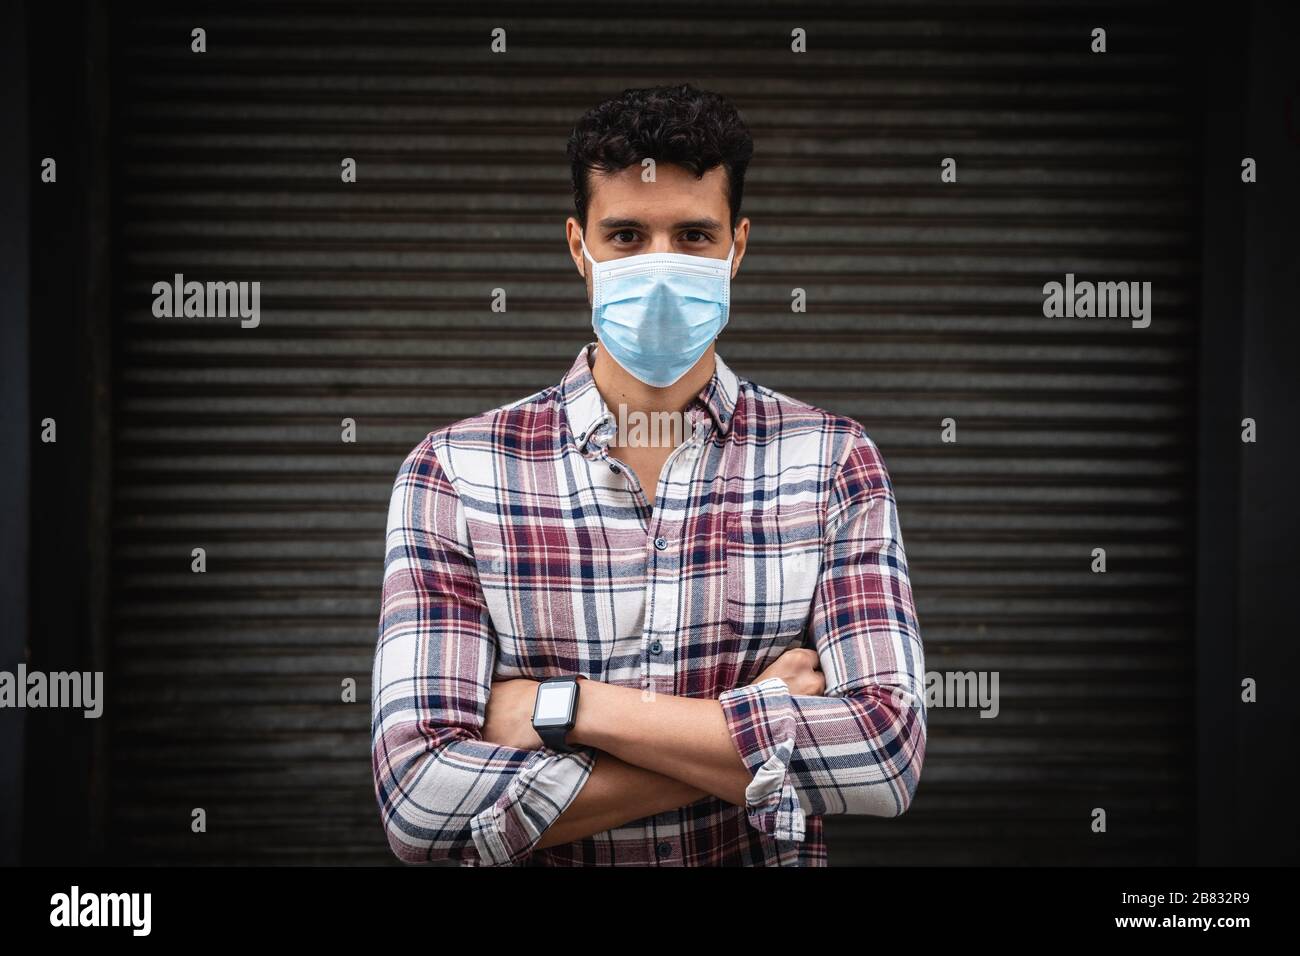 Kaukasischer Mann, der eine kovidte 19-Coronavirus-Maske außen trägt Stockfoto